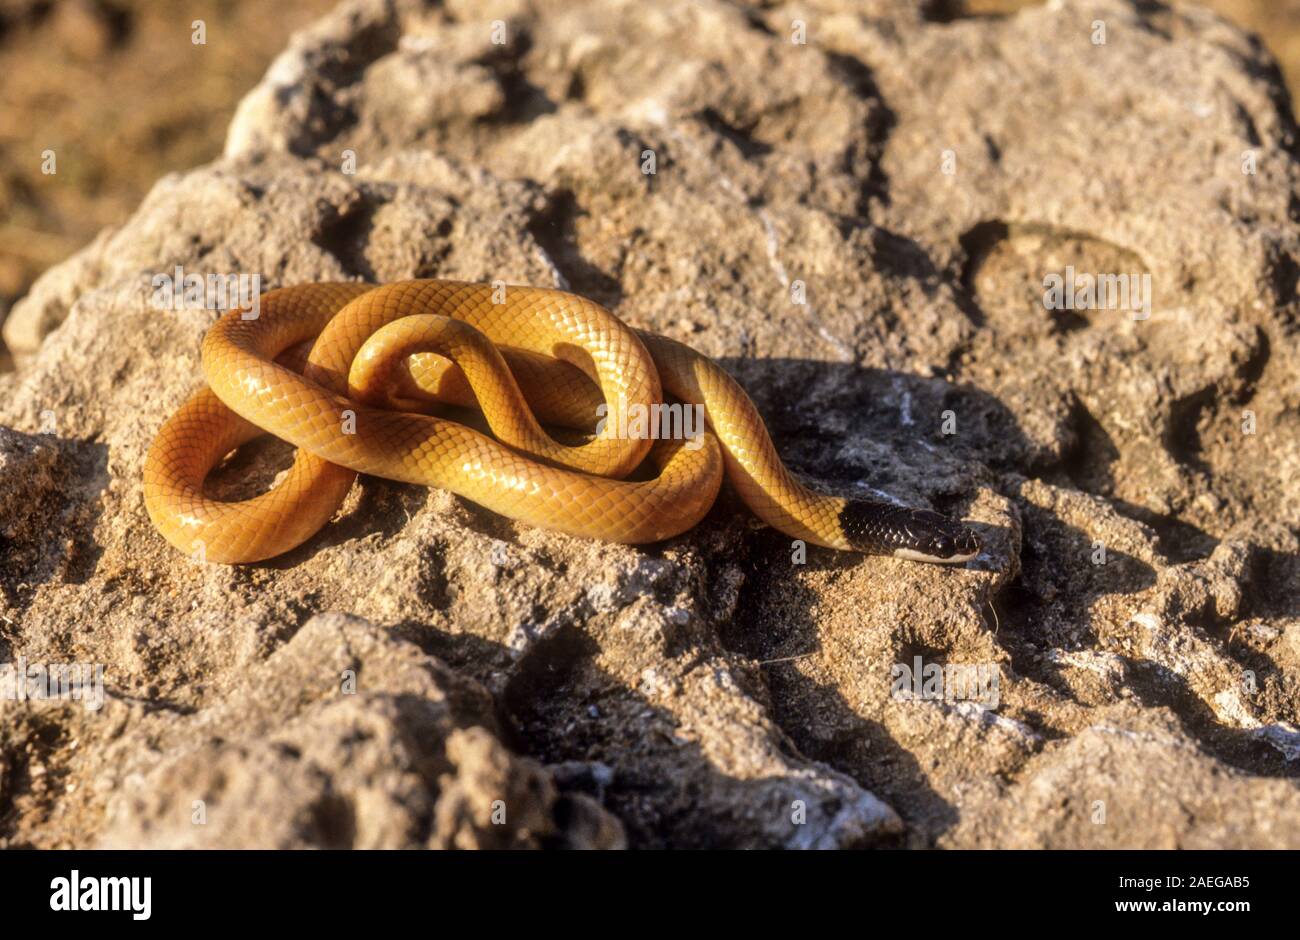 La masse à tête noire (Rhynchocalamus serpent melanocephalus), également connu sous le nom de snake kukri Palestine est une espèce de serpents inoffensifs, petit et élégant, w Banque D'Images